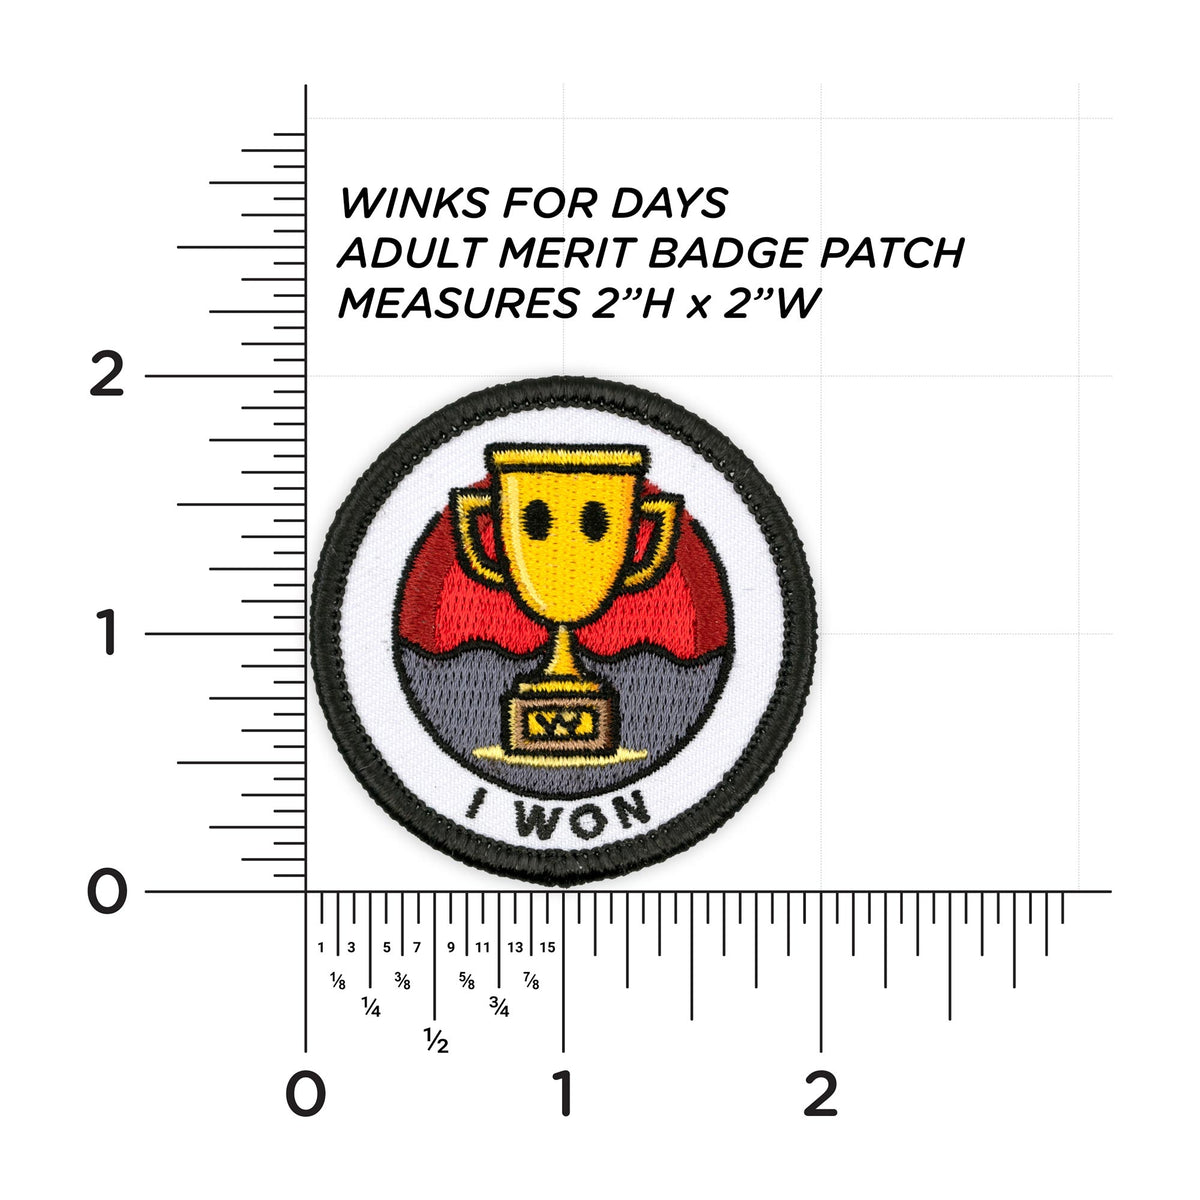 I Won patch measurements